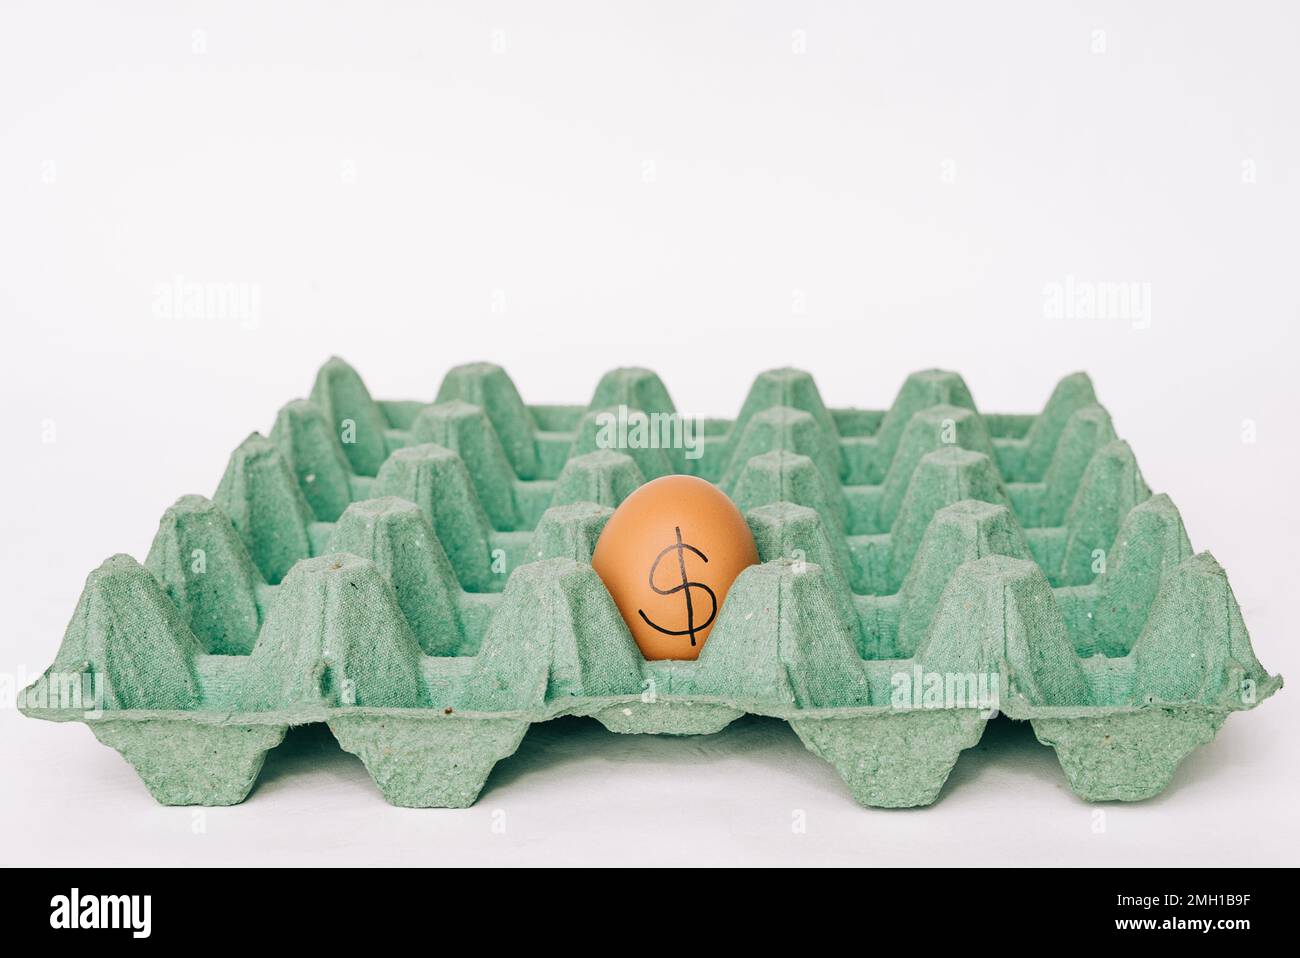 Imagen conceptual de un huevo con un dólar dibujado en él dentro de un cartón vacío del huevo. Concepto de precios de alimentos caros y escasez de alimentos. Foto de stock